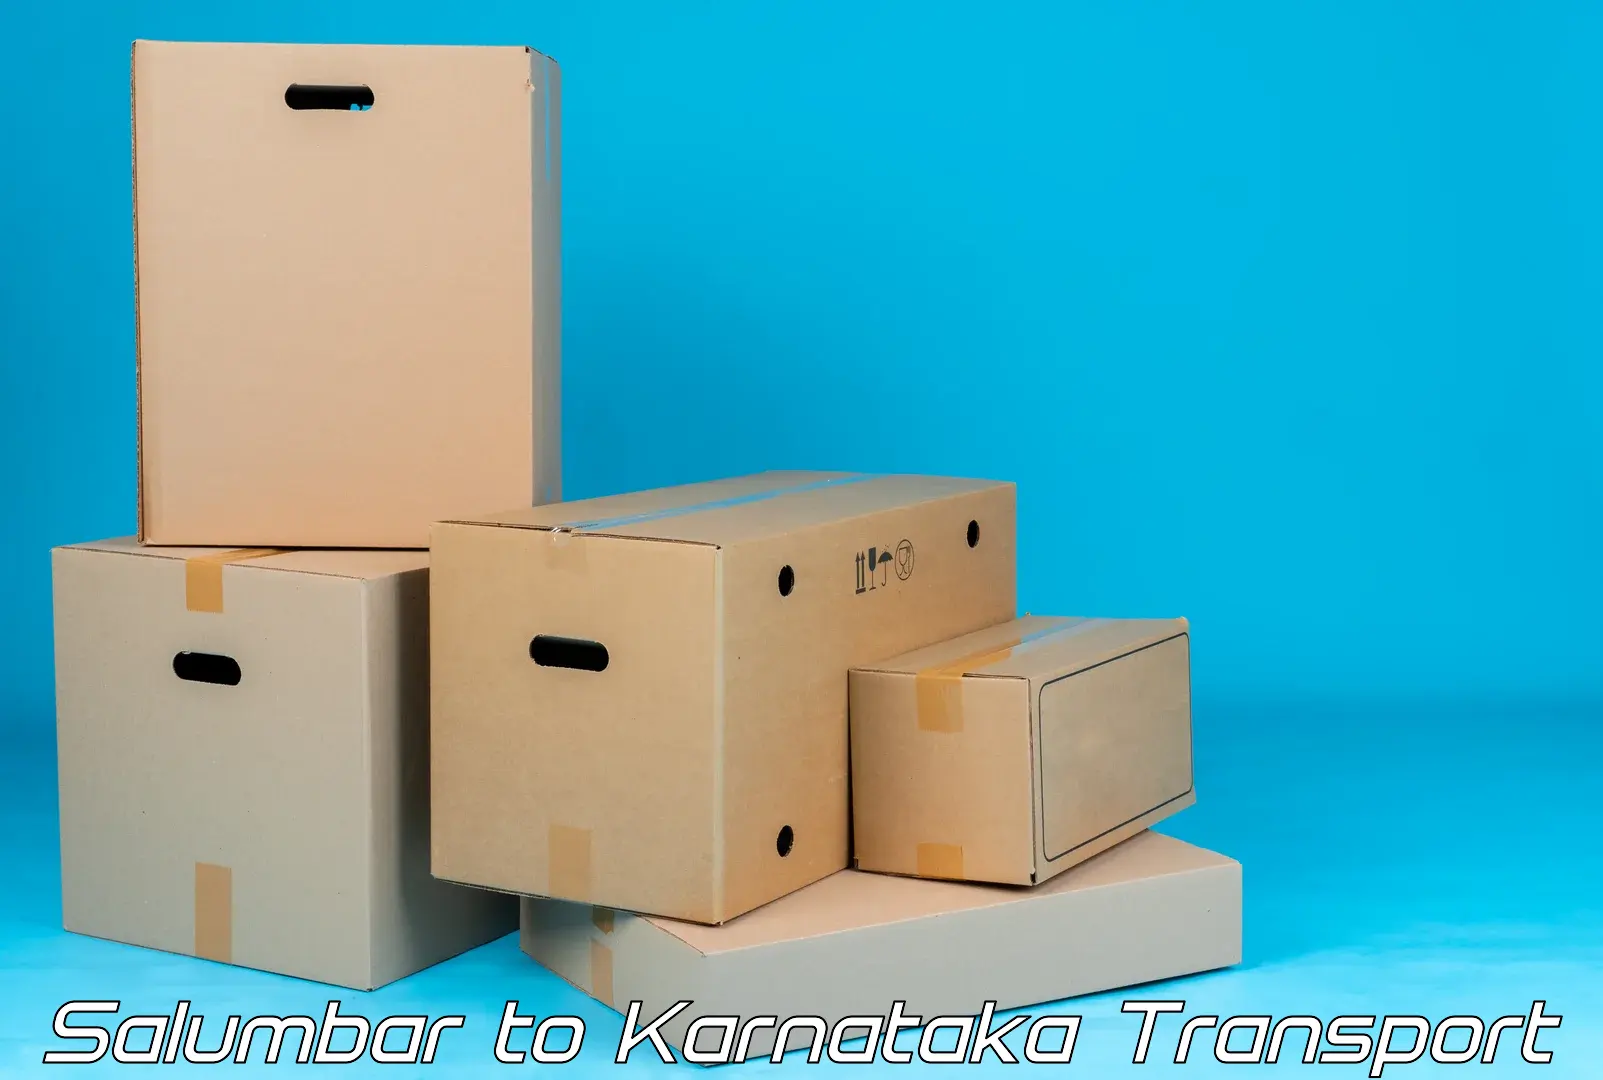 Container transport service Salumbar to Shorapur